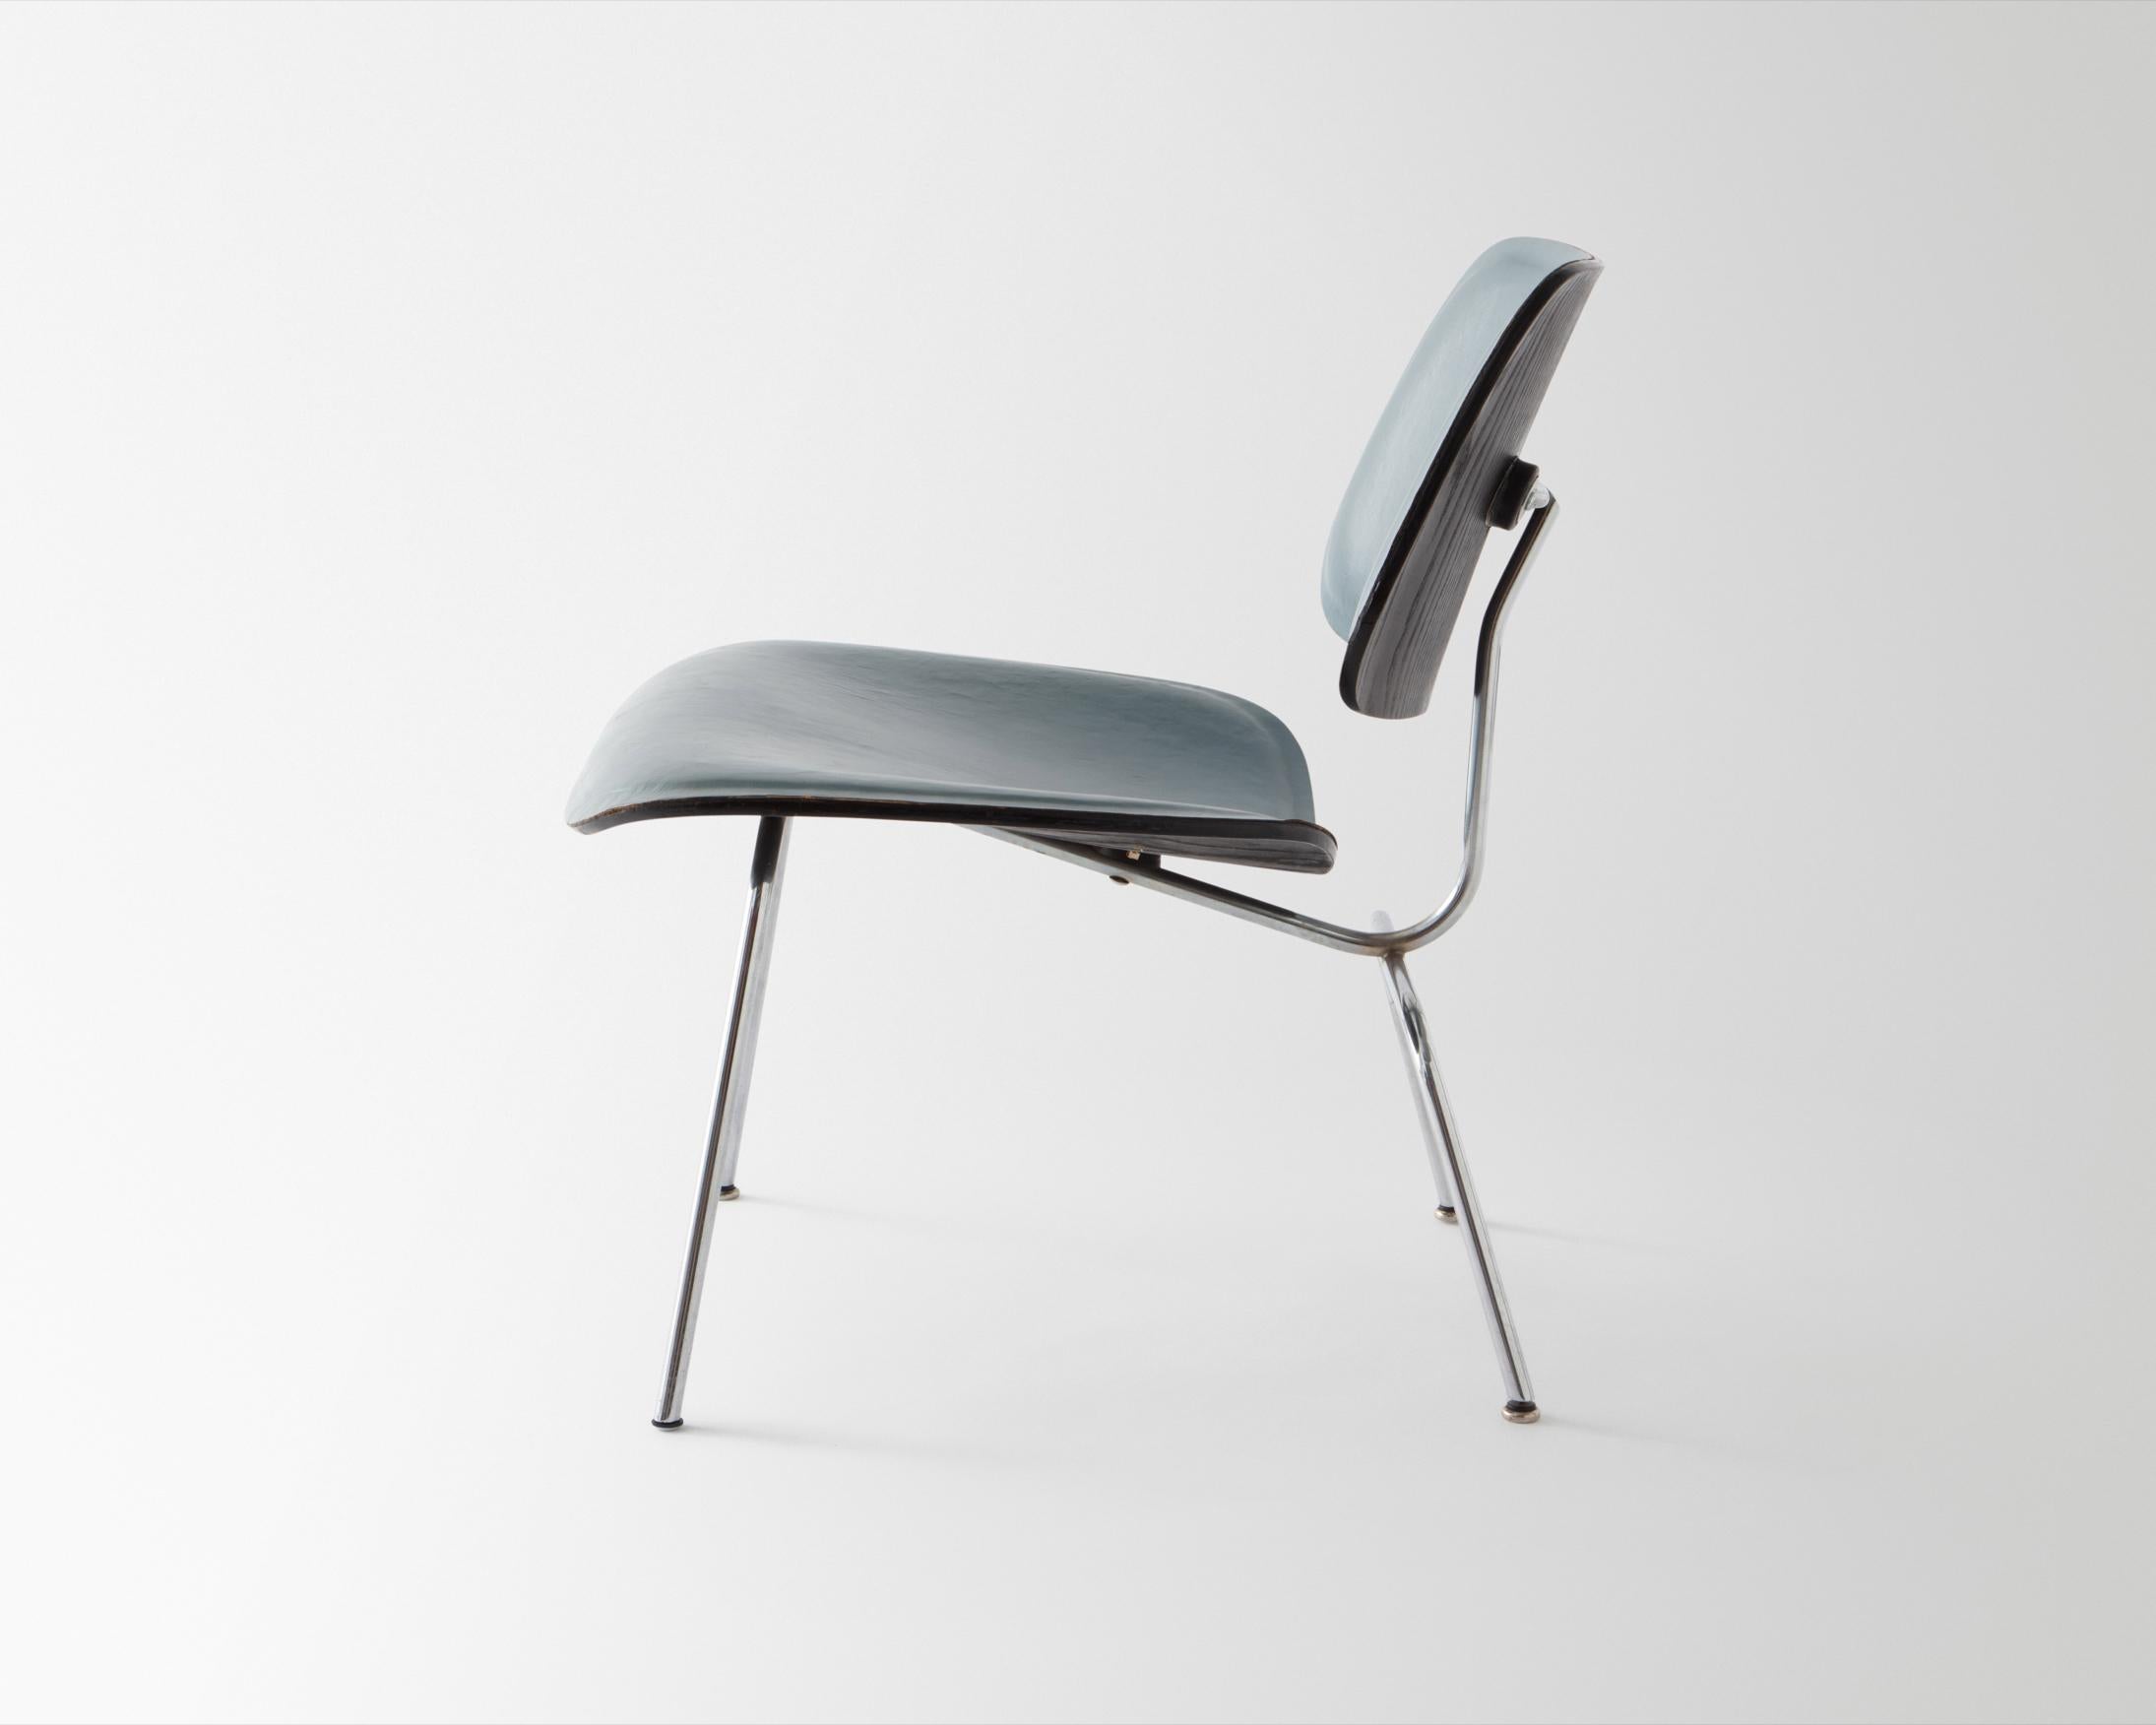 LCM (Lounge Chair Metal). Design/One 1946. Fabriqué par Herman Miller, Zeeland, Michigan,  ca. 1951-56. Contreplaqué de frêne moulé avec finition d'origine à la teinture à l'aniline noire et revêtement d'origine en cuir bleu, acier chromé, supports